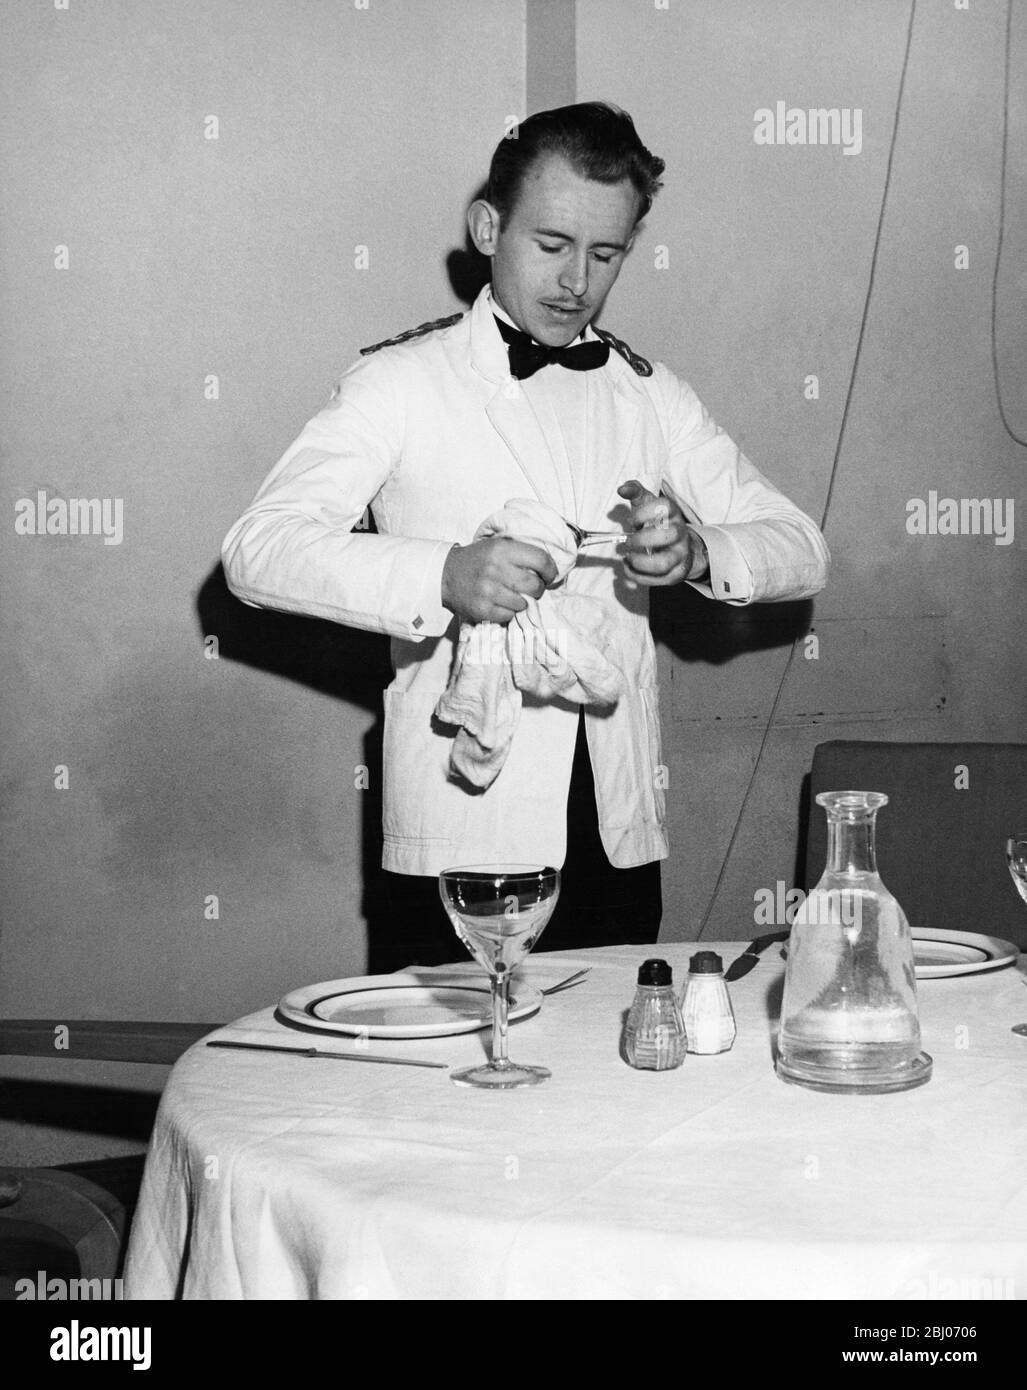 Un camarero pule un vaso mientras prepara la mesa para los comensales del restaurante por las noches Foto de stock